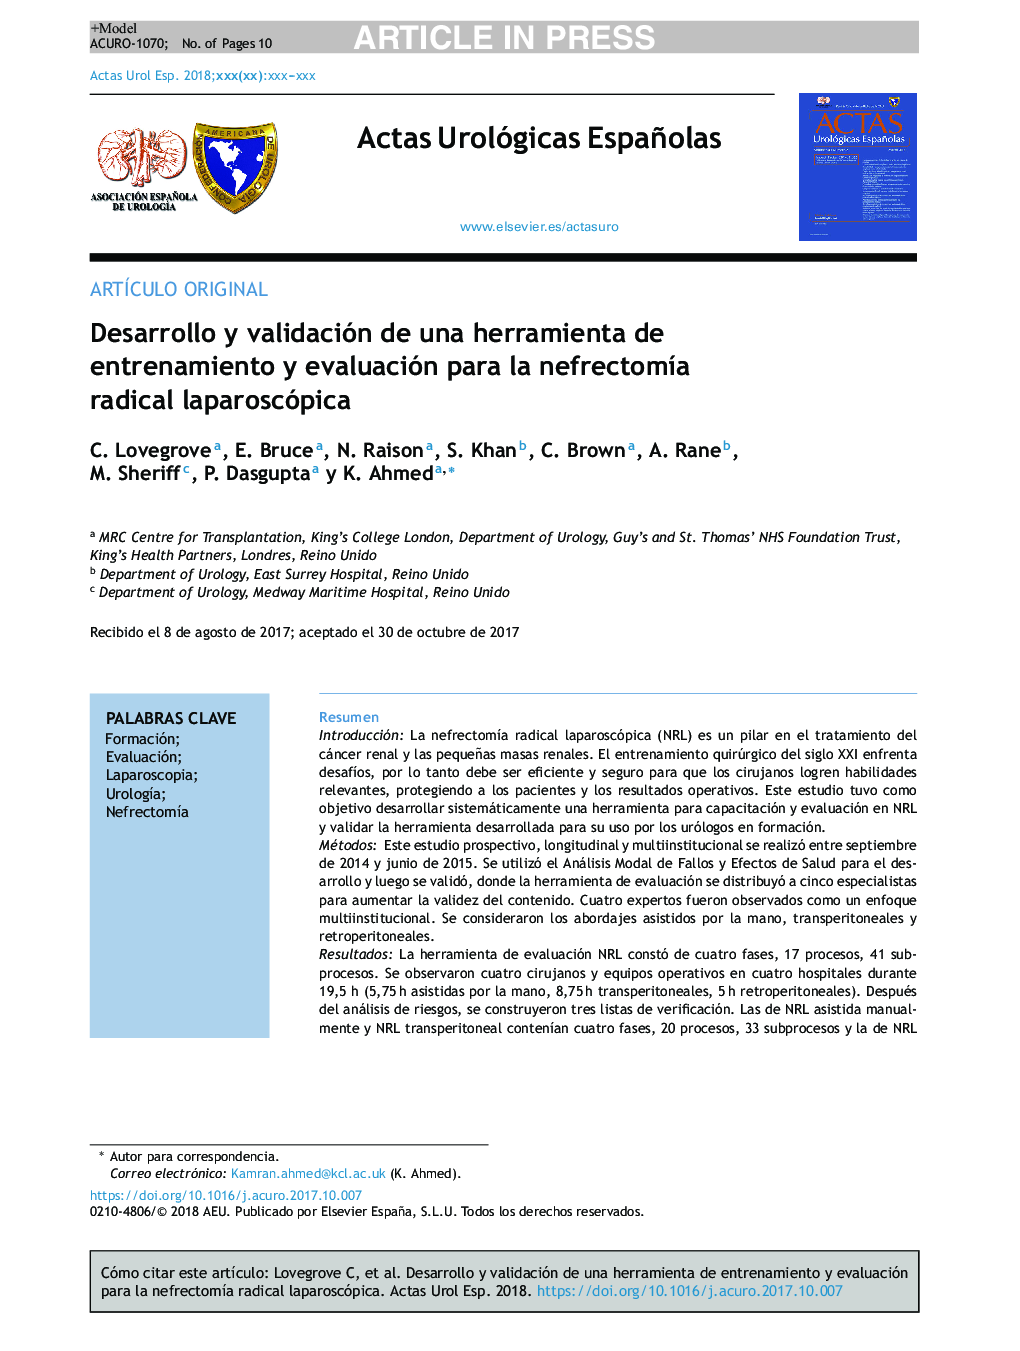 Desarrollo y validación de una herramienta de entrenamiento y evaluación para la nefrectomÃ­a radical laparoscópica